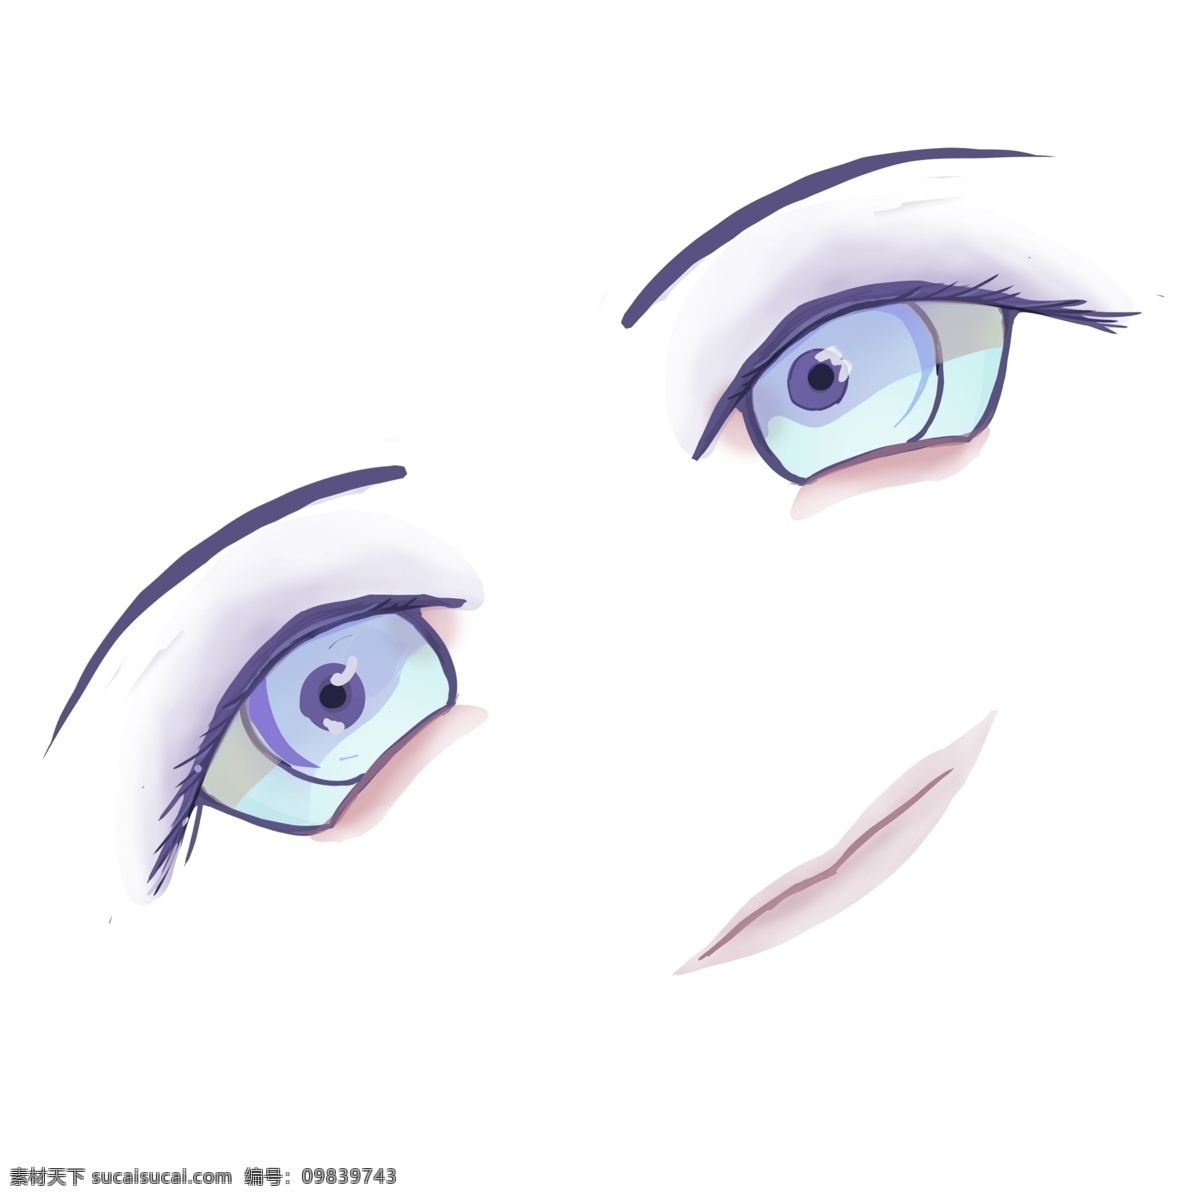 卡通 梦幻 紫色 眼睛 五官 可爱眼睛 闪亮 人物五官 q版眼睛 少女